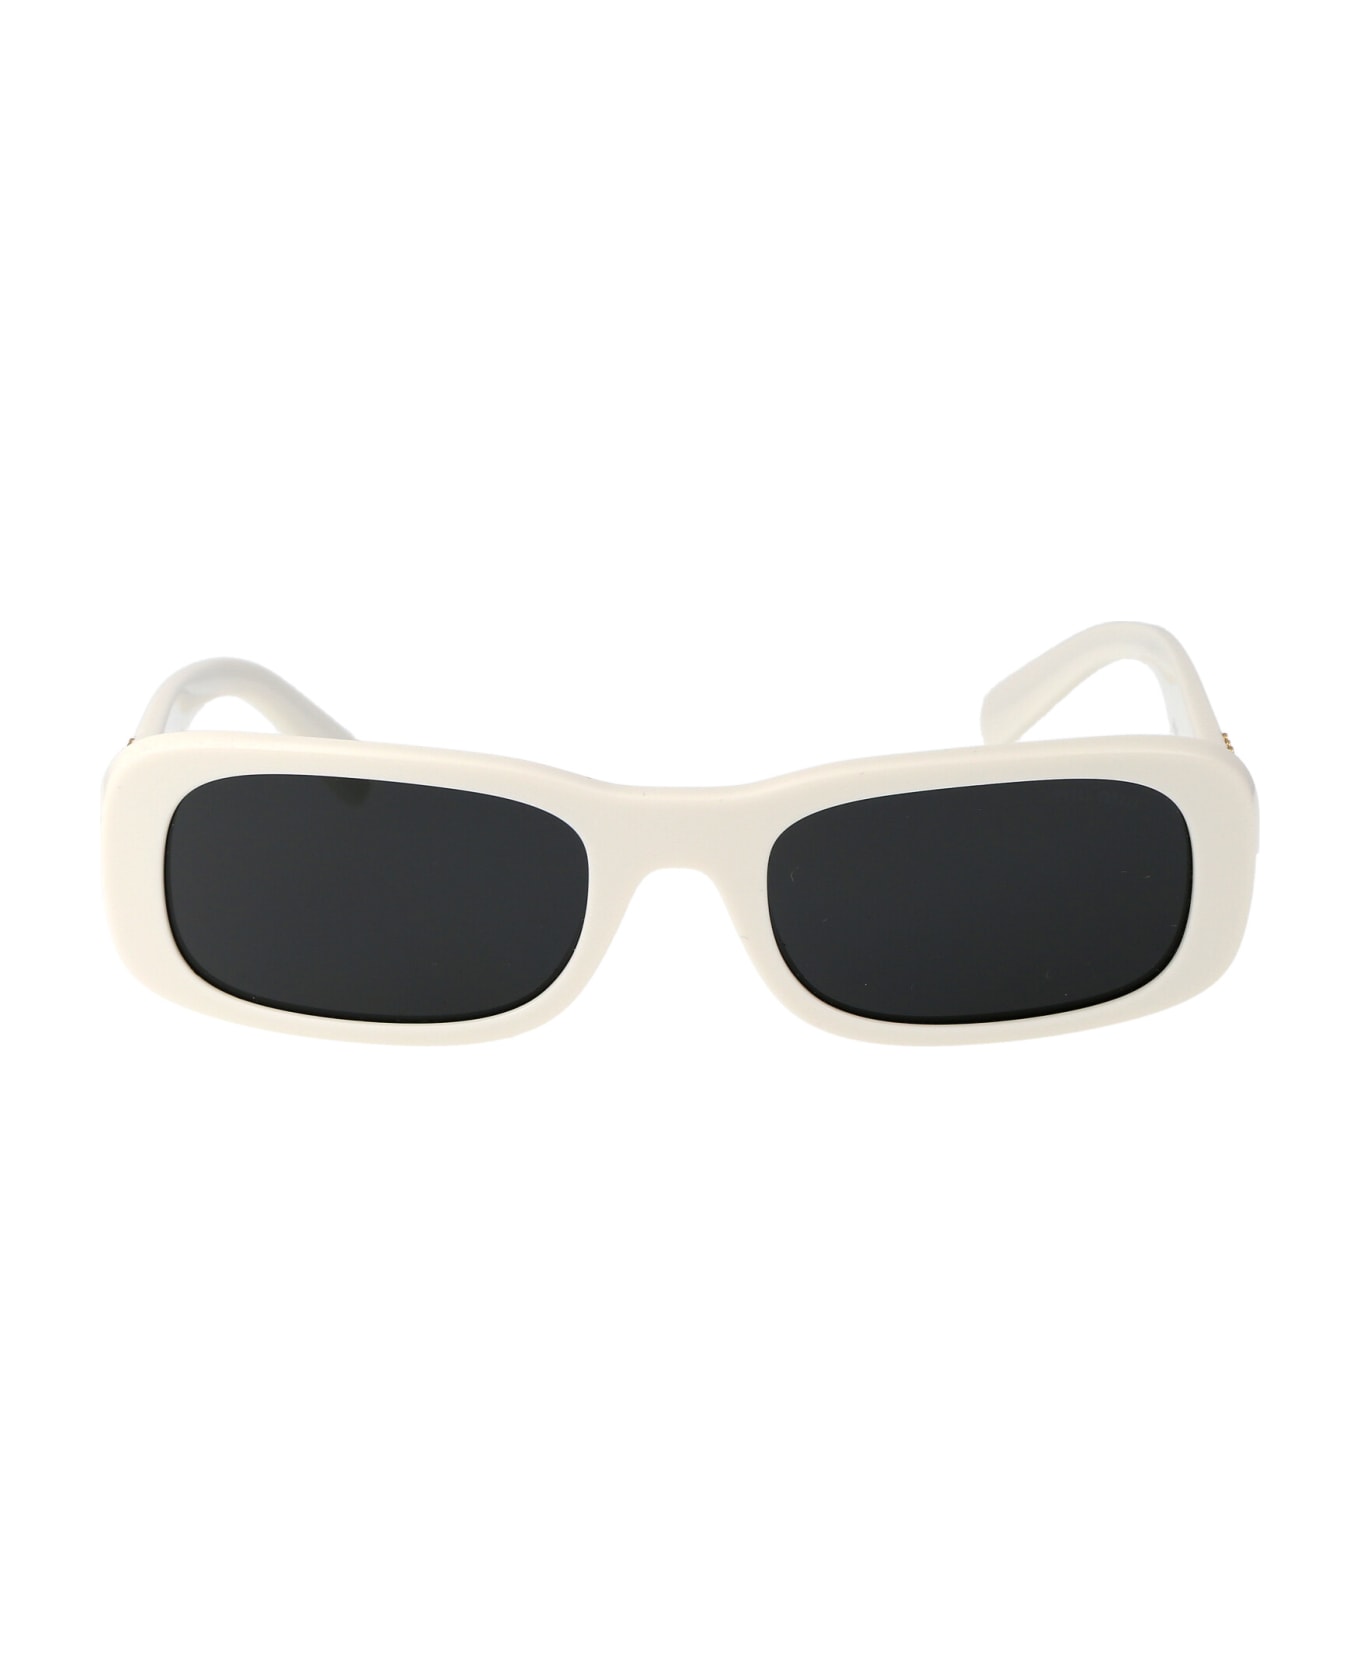 Miu Miu Eyewear 0mu 08zs Sunglasses - 1425S0 White Ivory